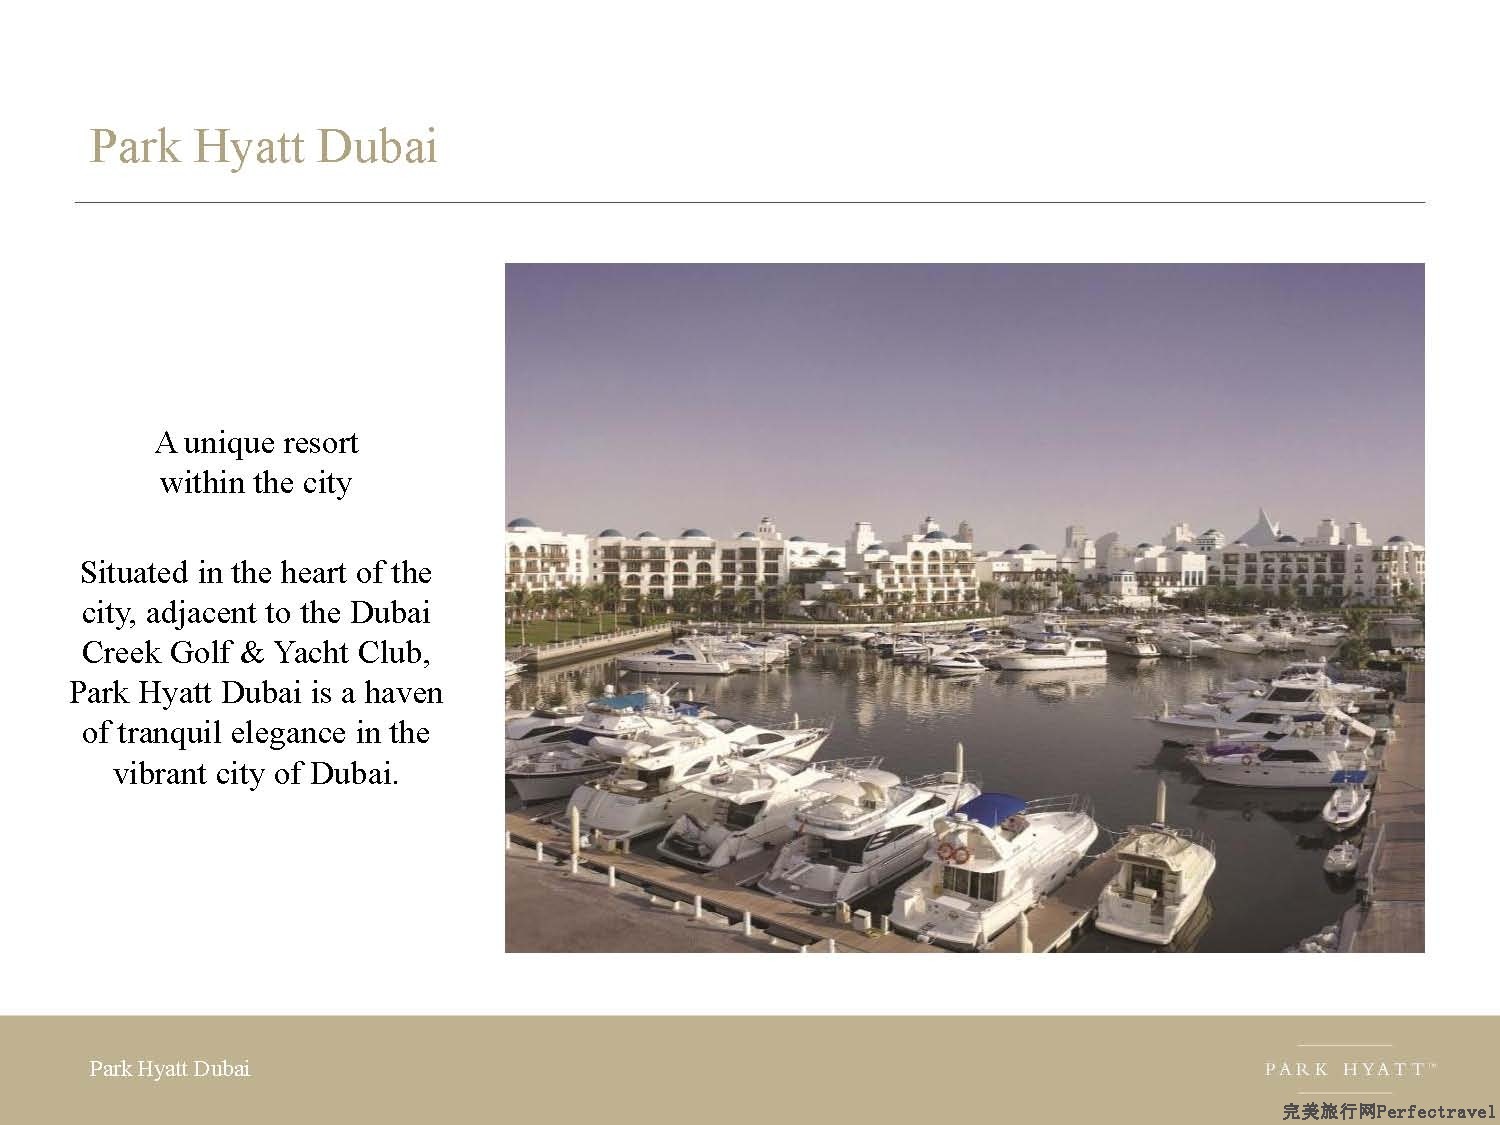 Park Hyatt Dubai presentation - 2013_Page_03.jpg